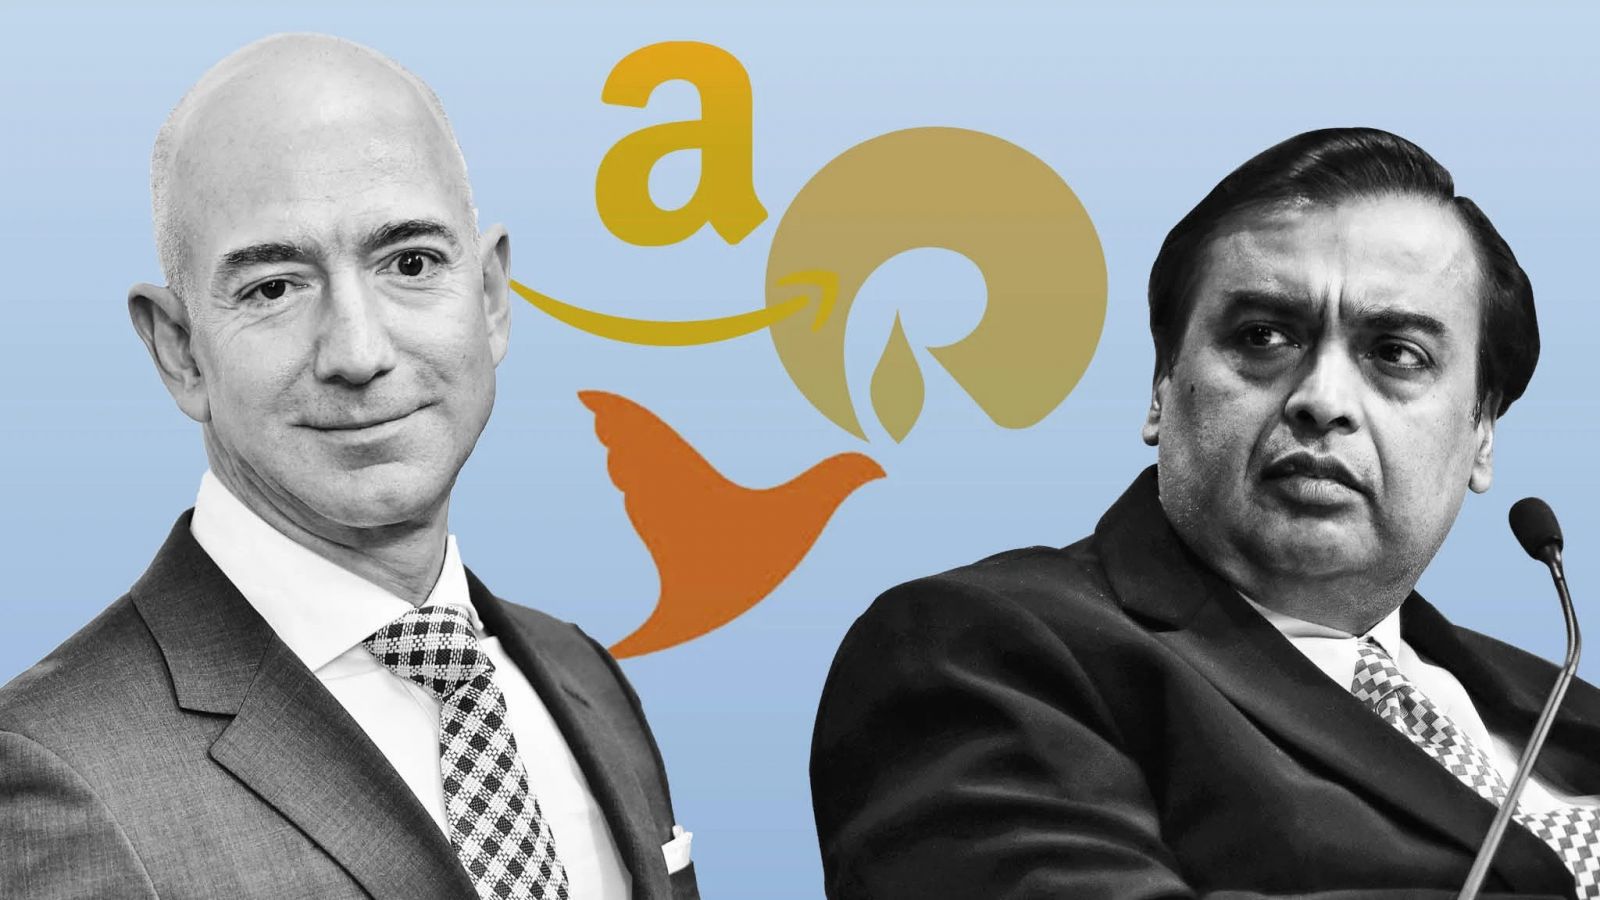 Cuộc đấu giữa tỉ phú Jeff Bezos và tỉ phú Mukesh Ambani đã chính thức nổ ra ở Ấn Độ